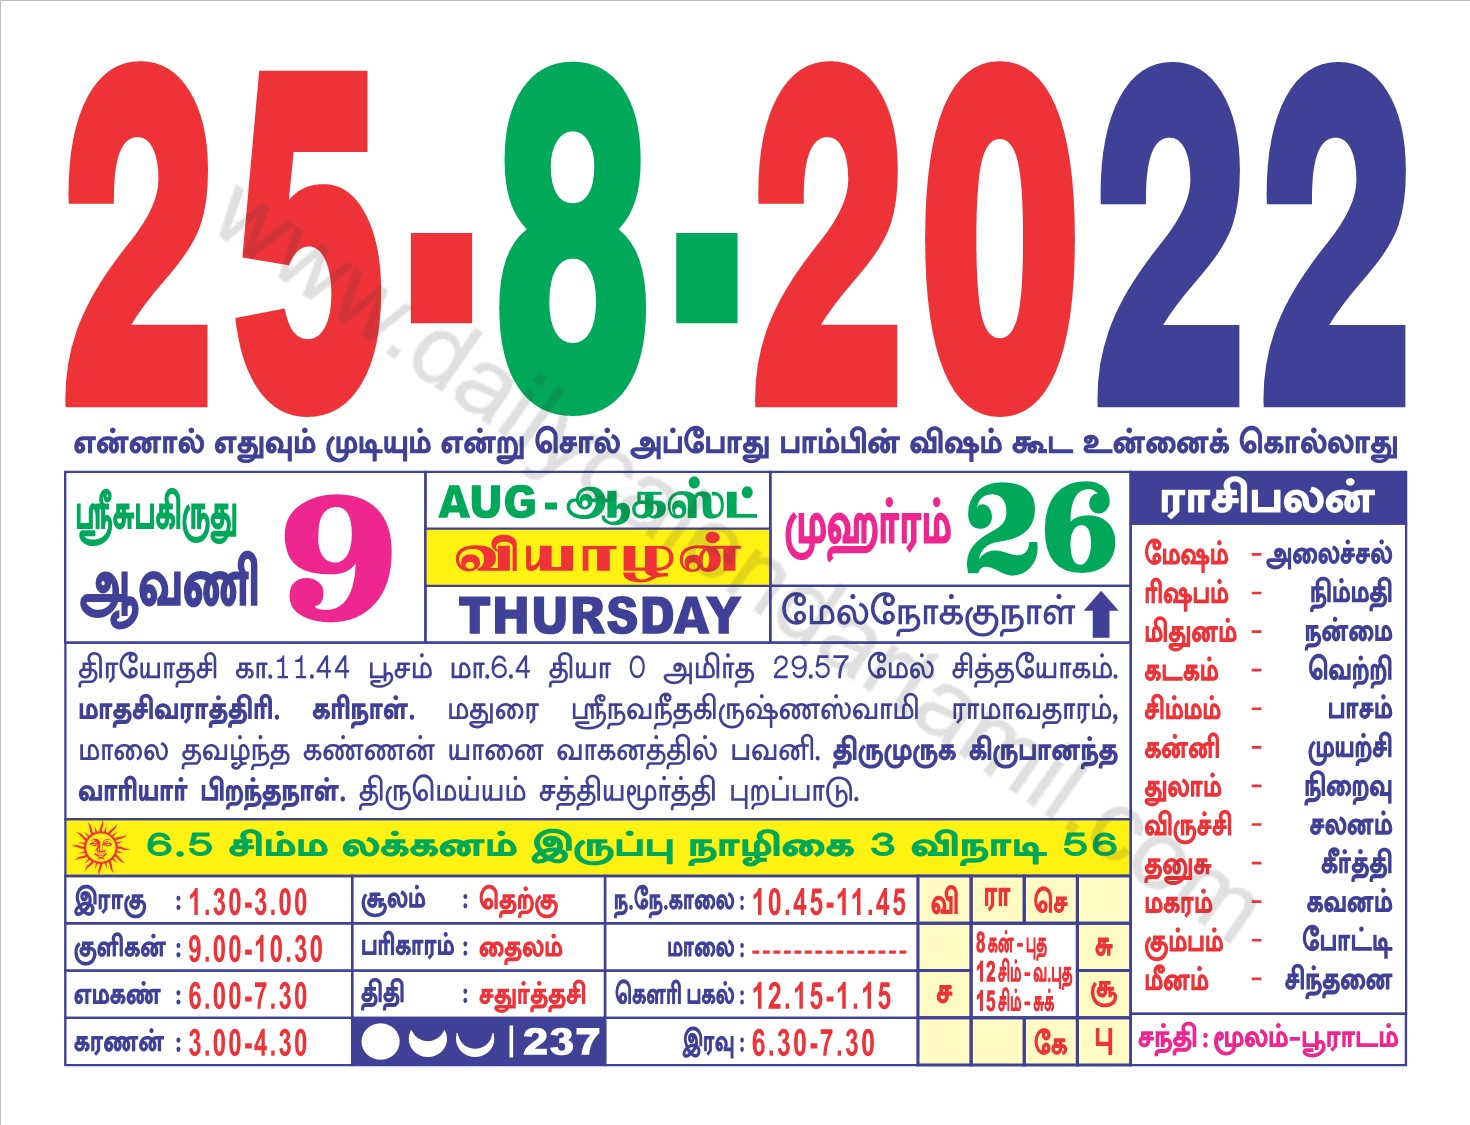 Tamil Calendar 2022 August Tamil Calendar August 2022 | தமிழ் மாத காலண்டர் 2022